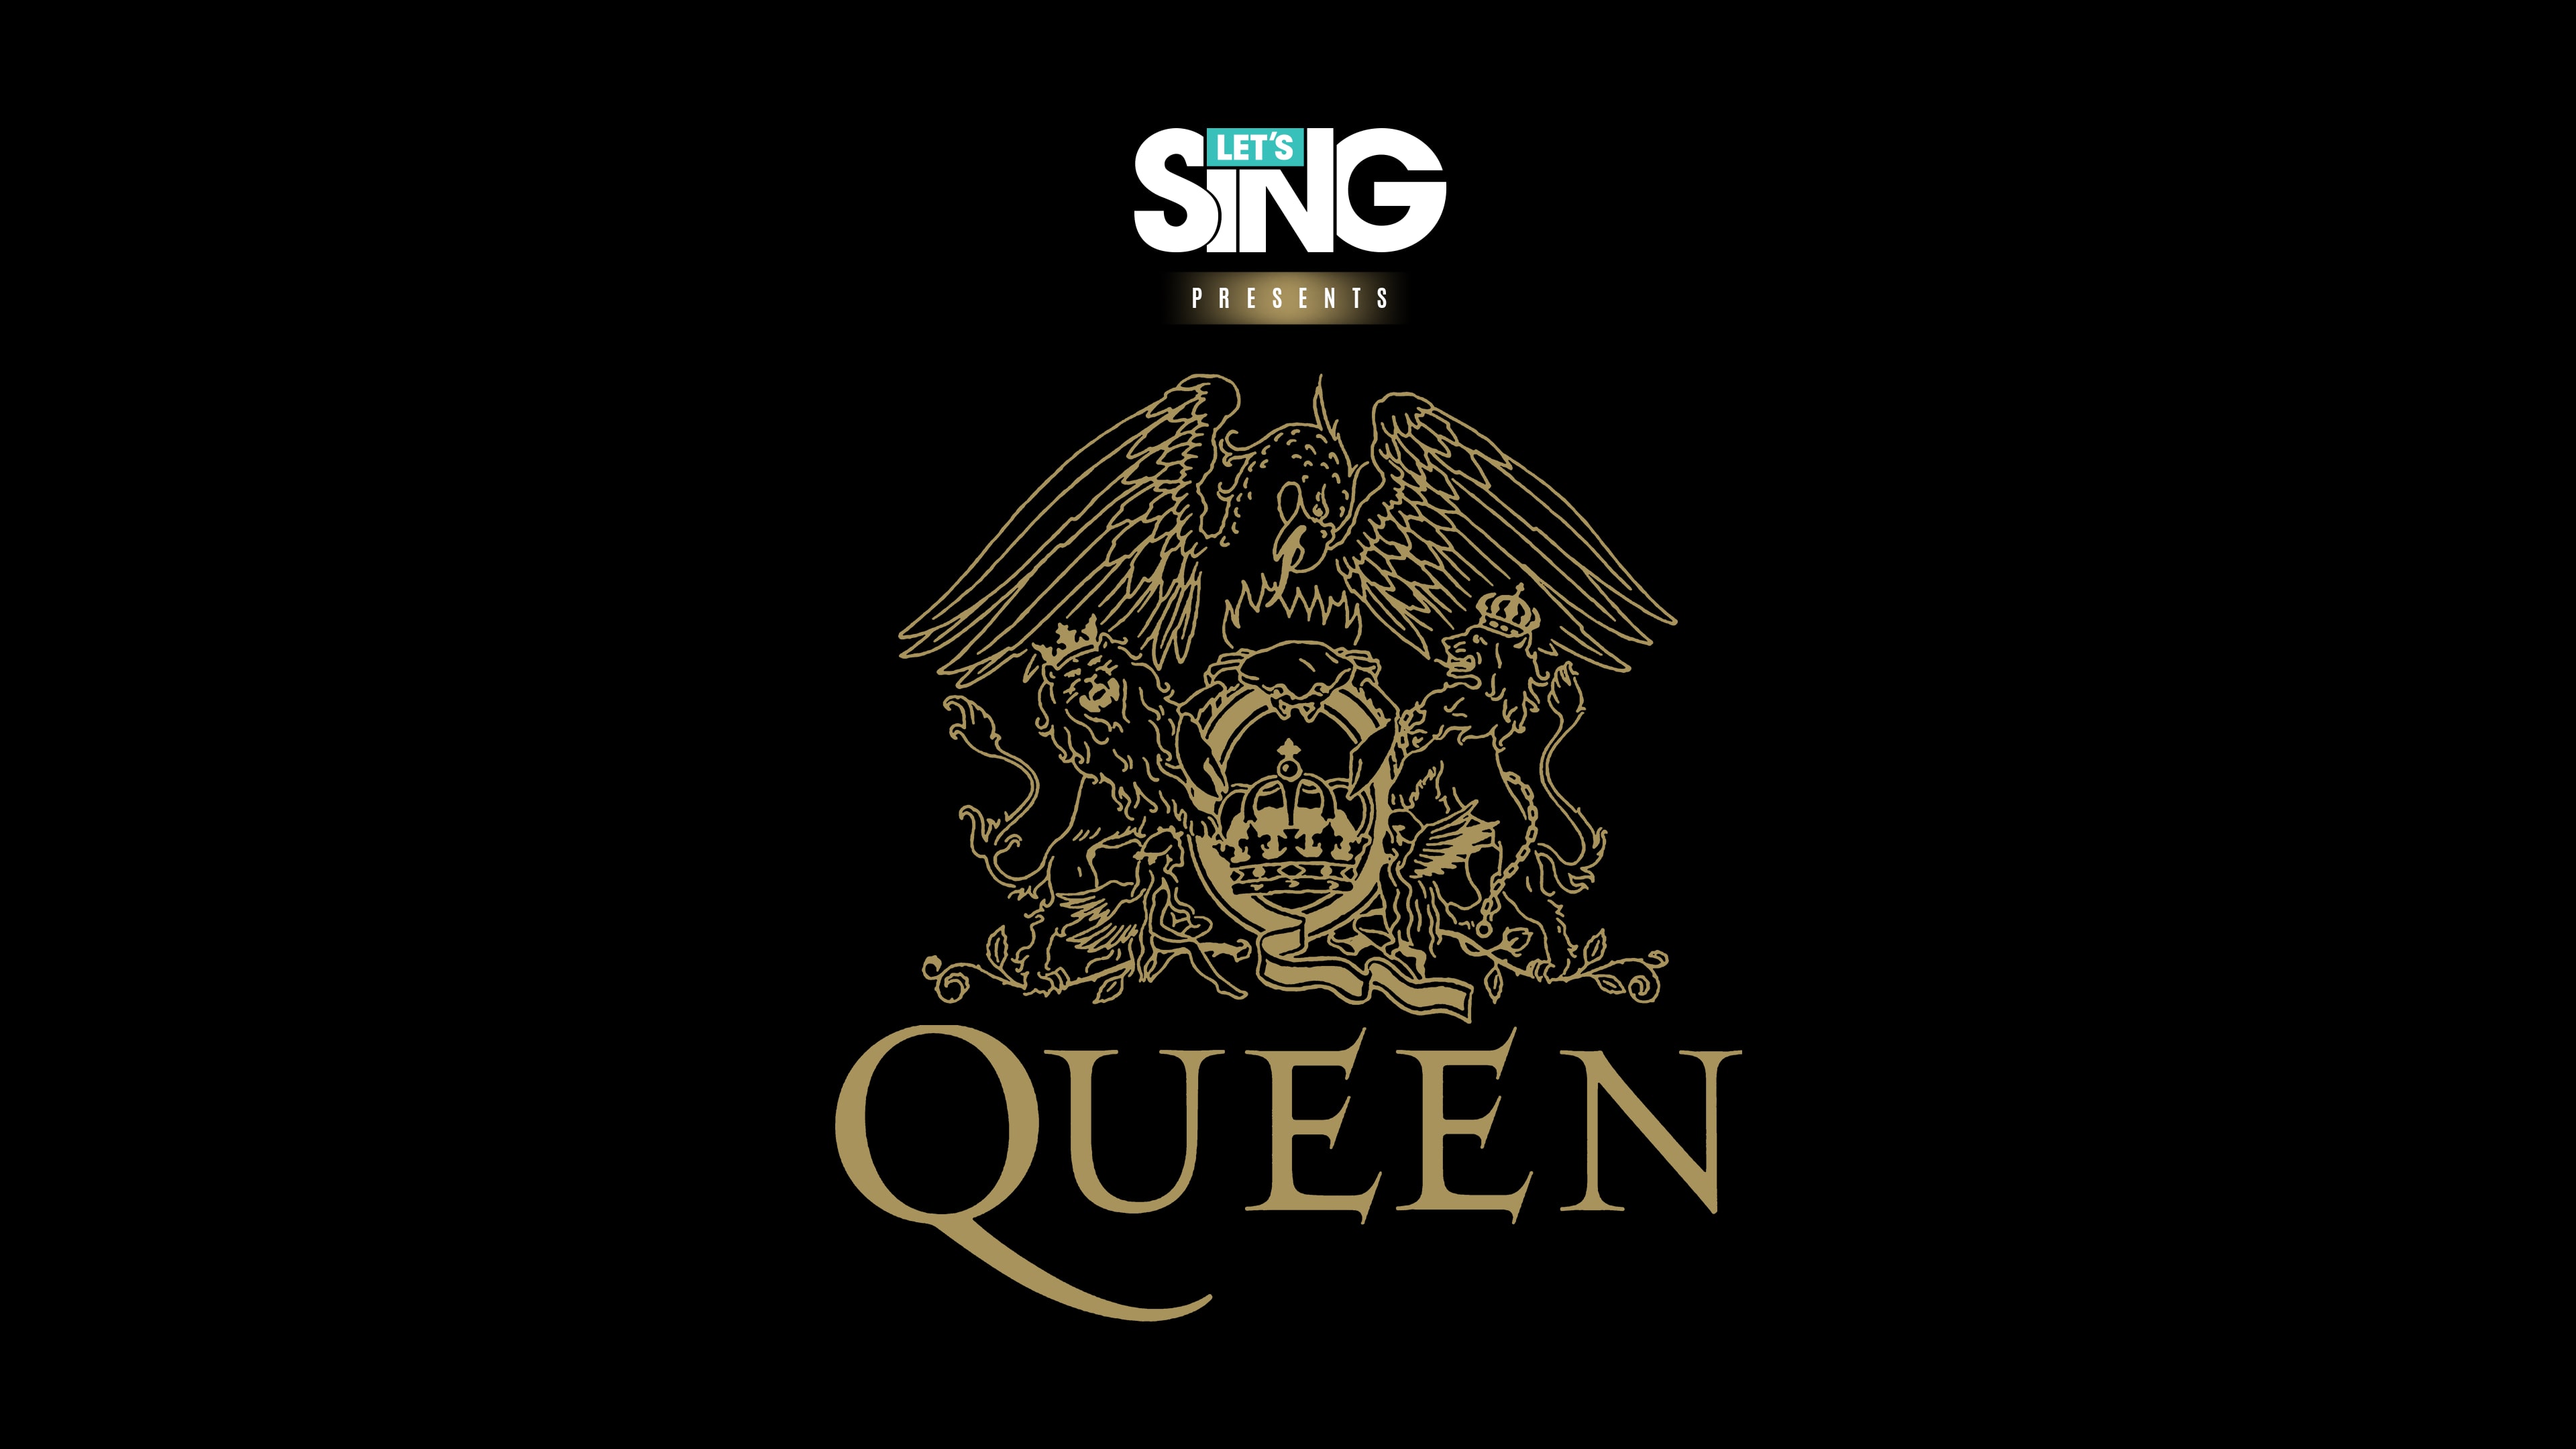 Let's Sing Queen (英文)